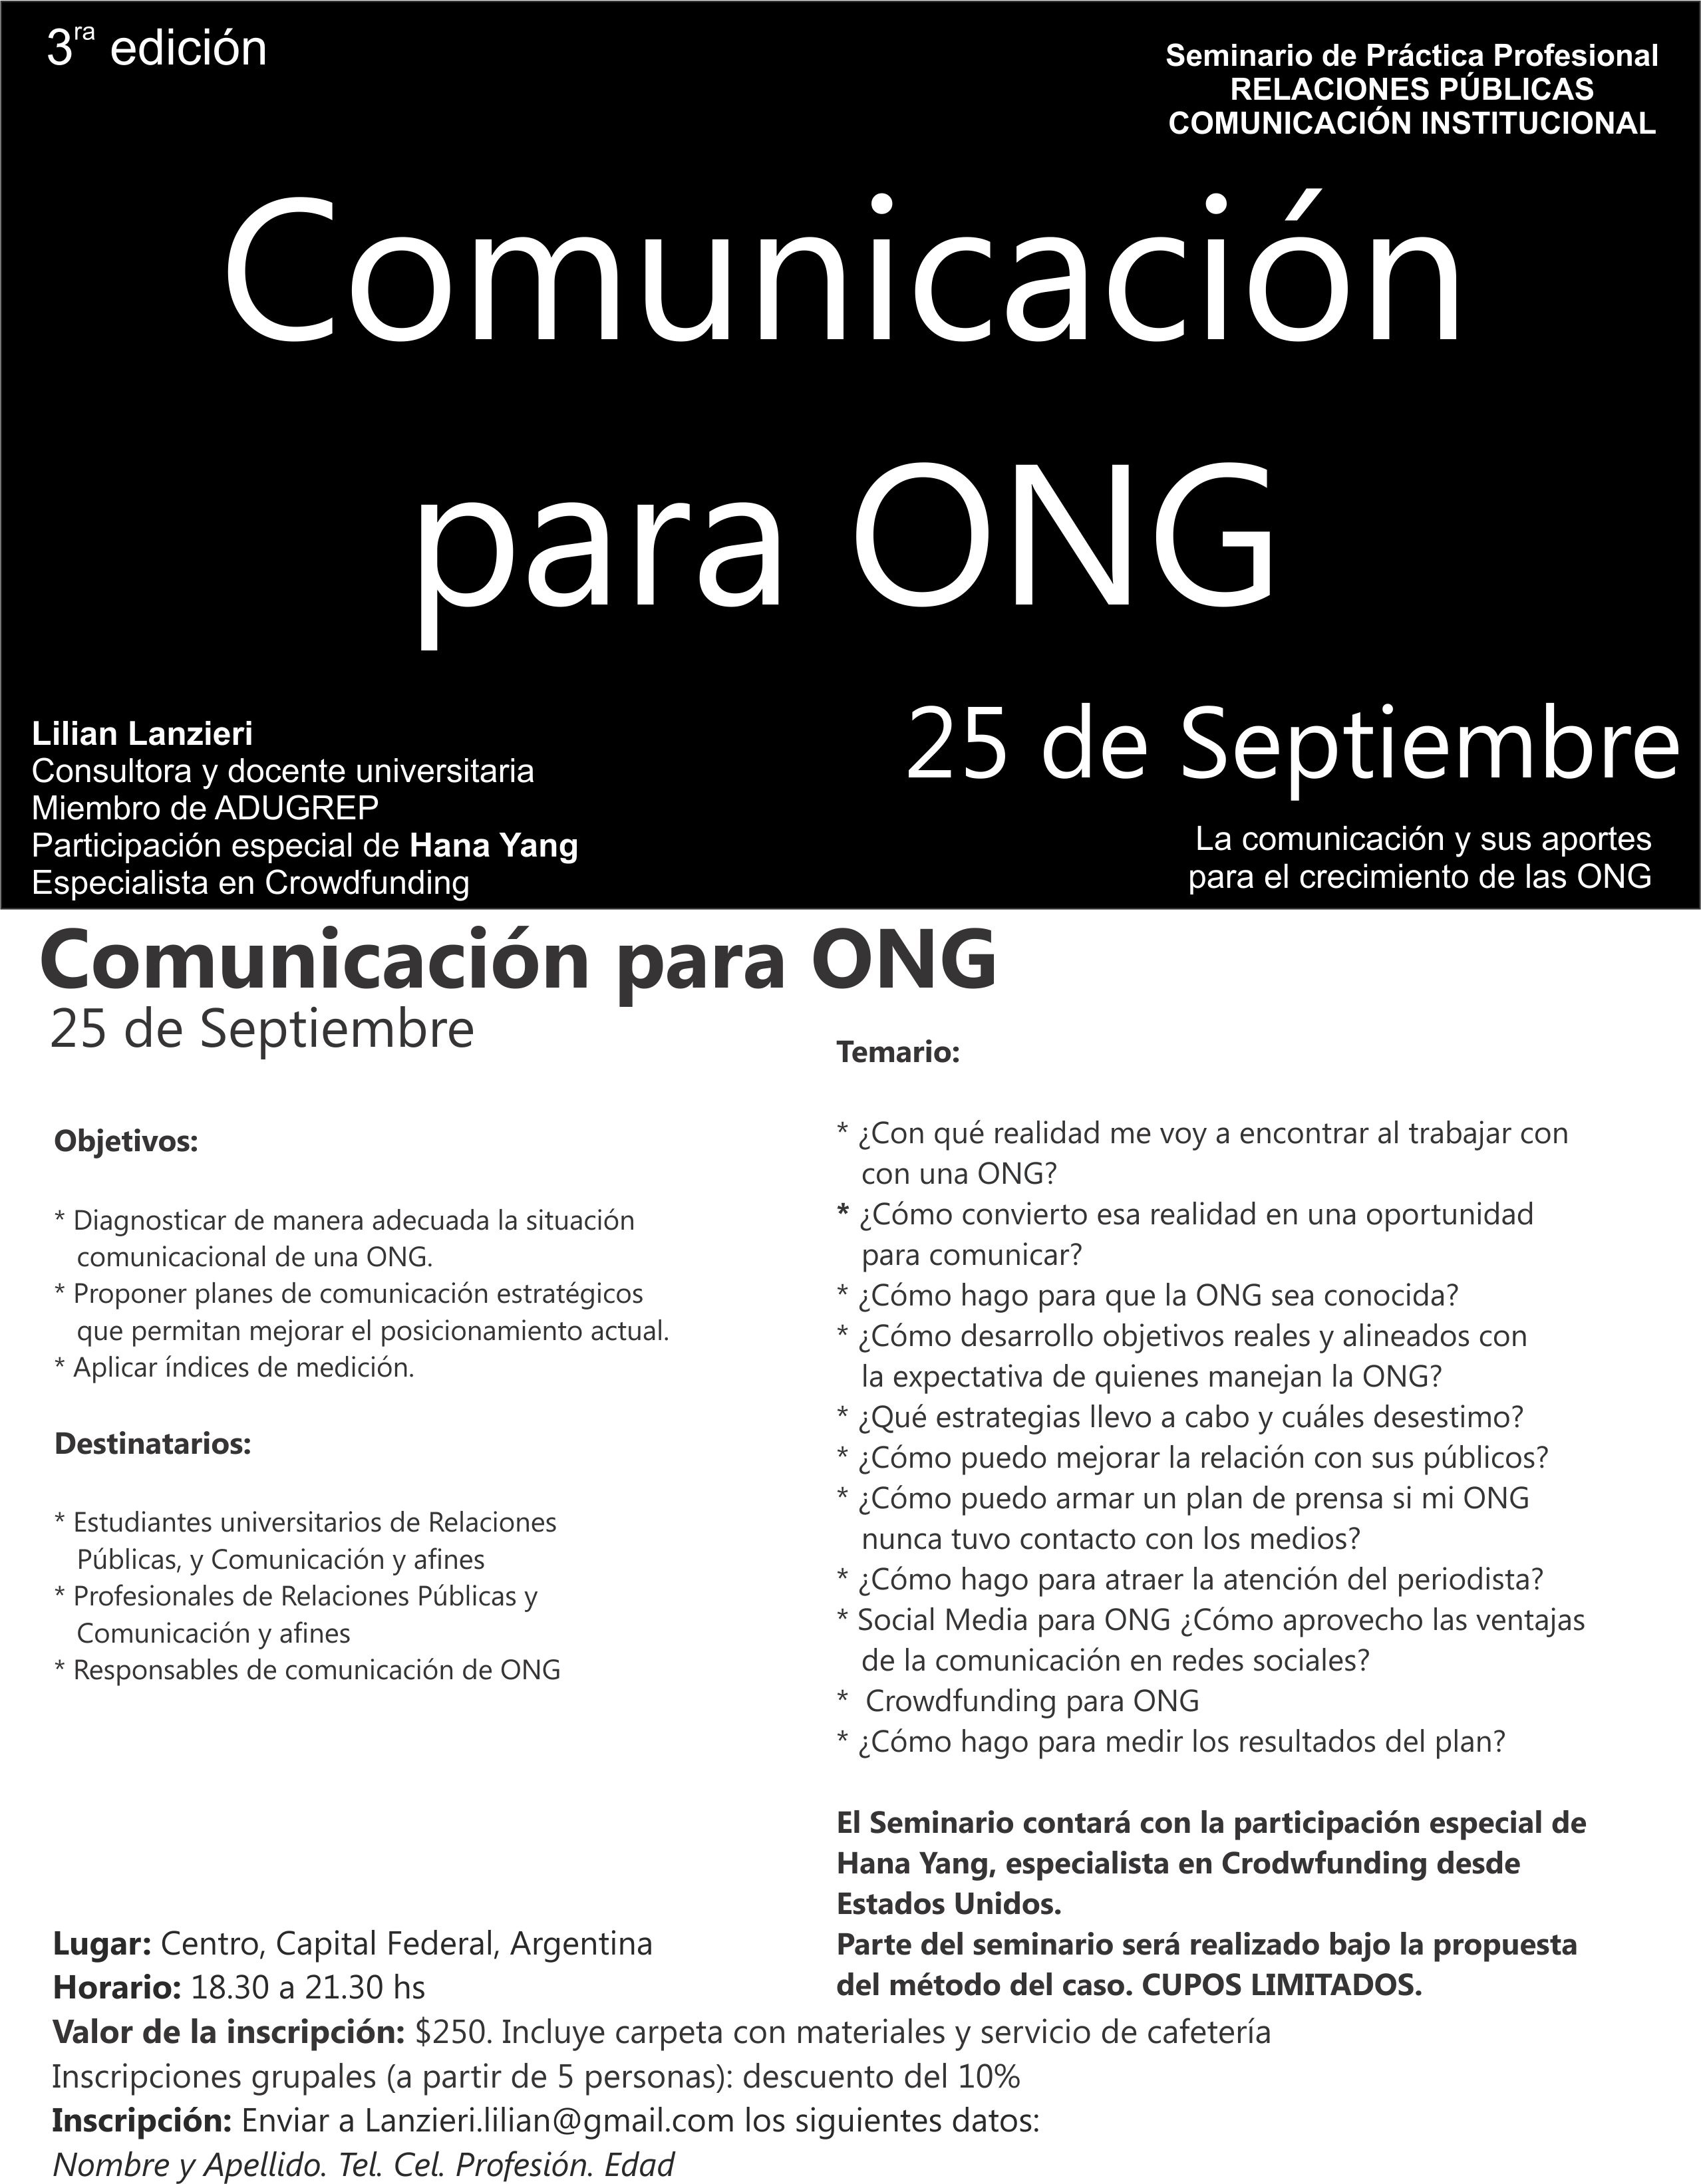 3ra Edición Seminario de Práctica Profesional: «Comunicación para ONG»